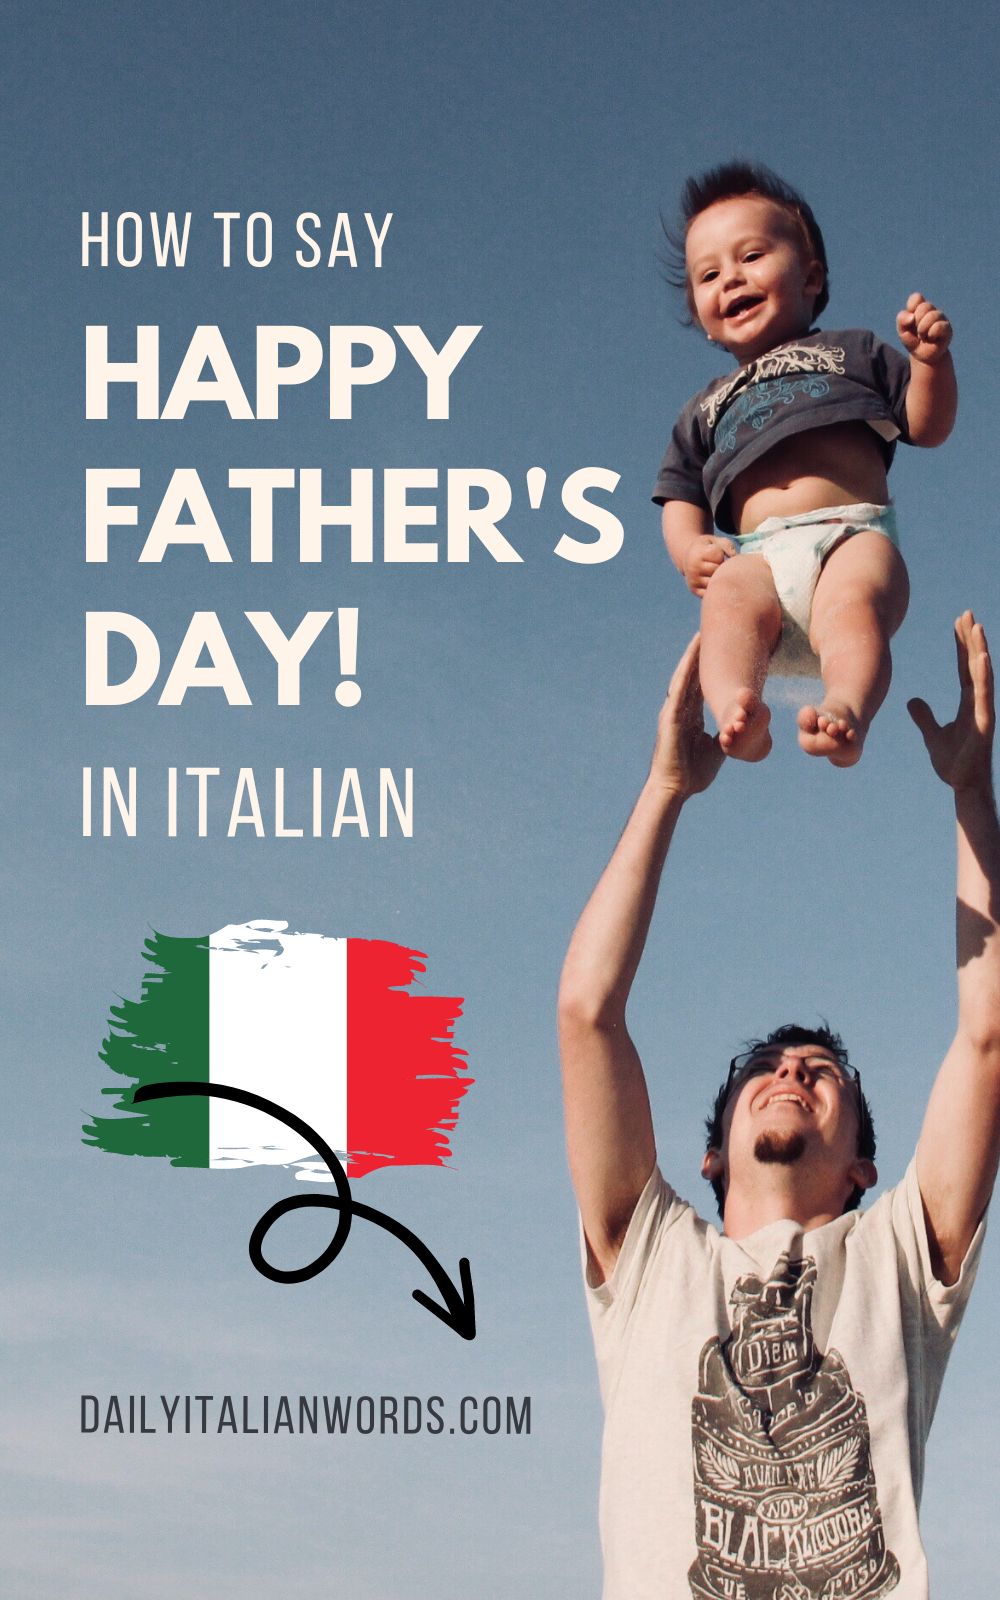 How to Say "Happy Father's Day!" in Italian Buona Festa del Papà